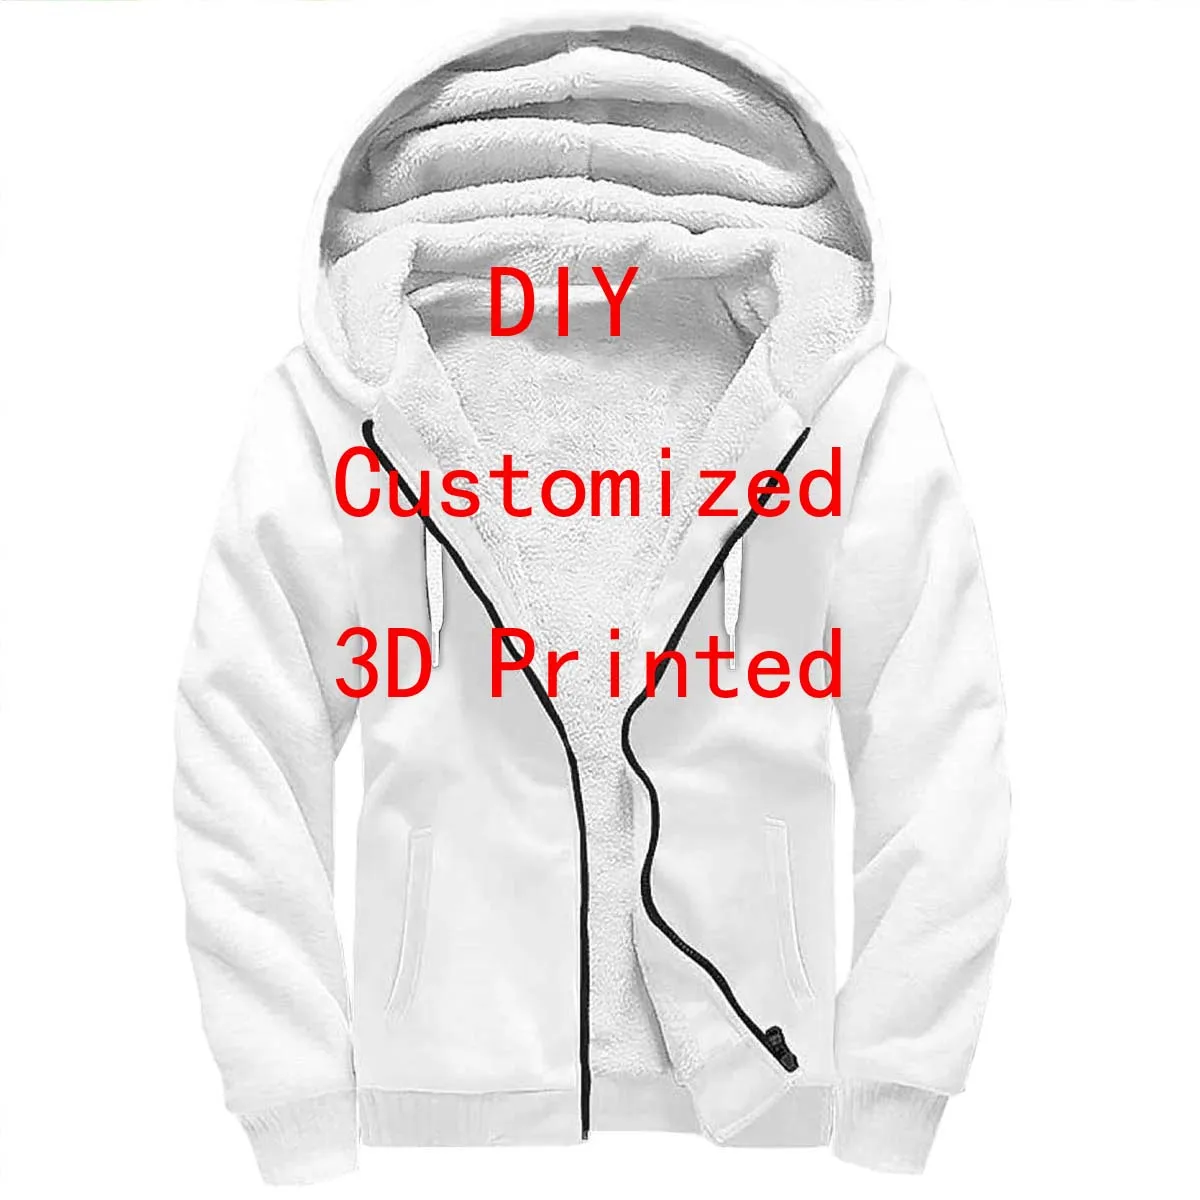 Plstar Cosmos Drop Shipping VIP Link Tops DIY 3D Printed Sherpa Fleece Winter Unisex Winter Warm Double Plus velvet Zip Hoodies